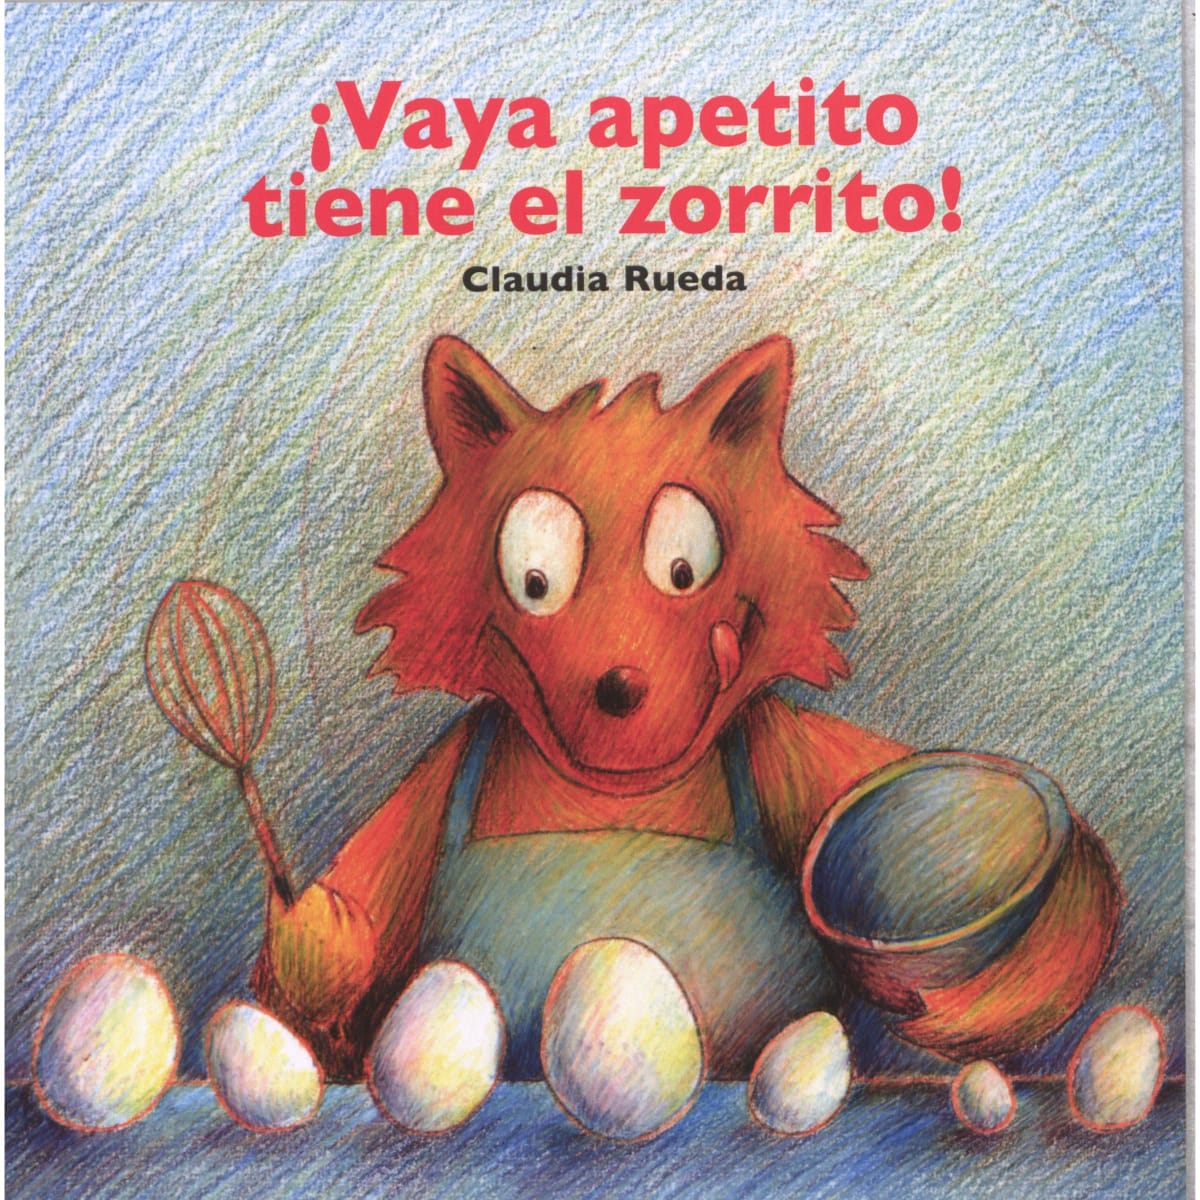 Foto de Programa Nacional por La Lectura. Reseña. “¡Vaya apetito tiene el zorrito!”, de Claudia Rueda.